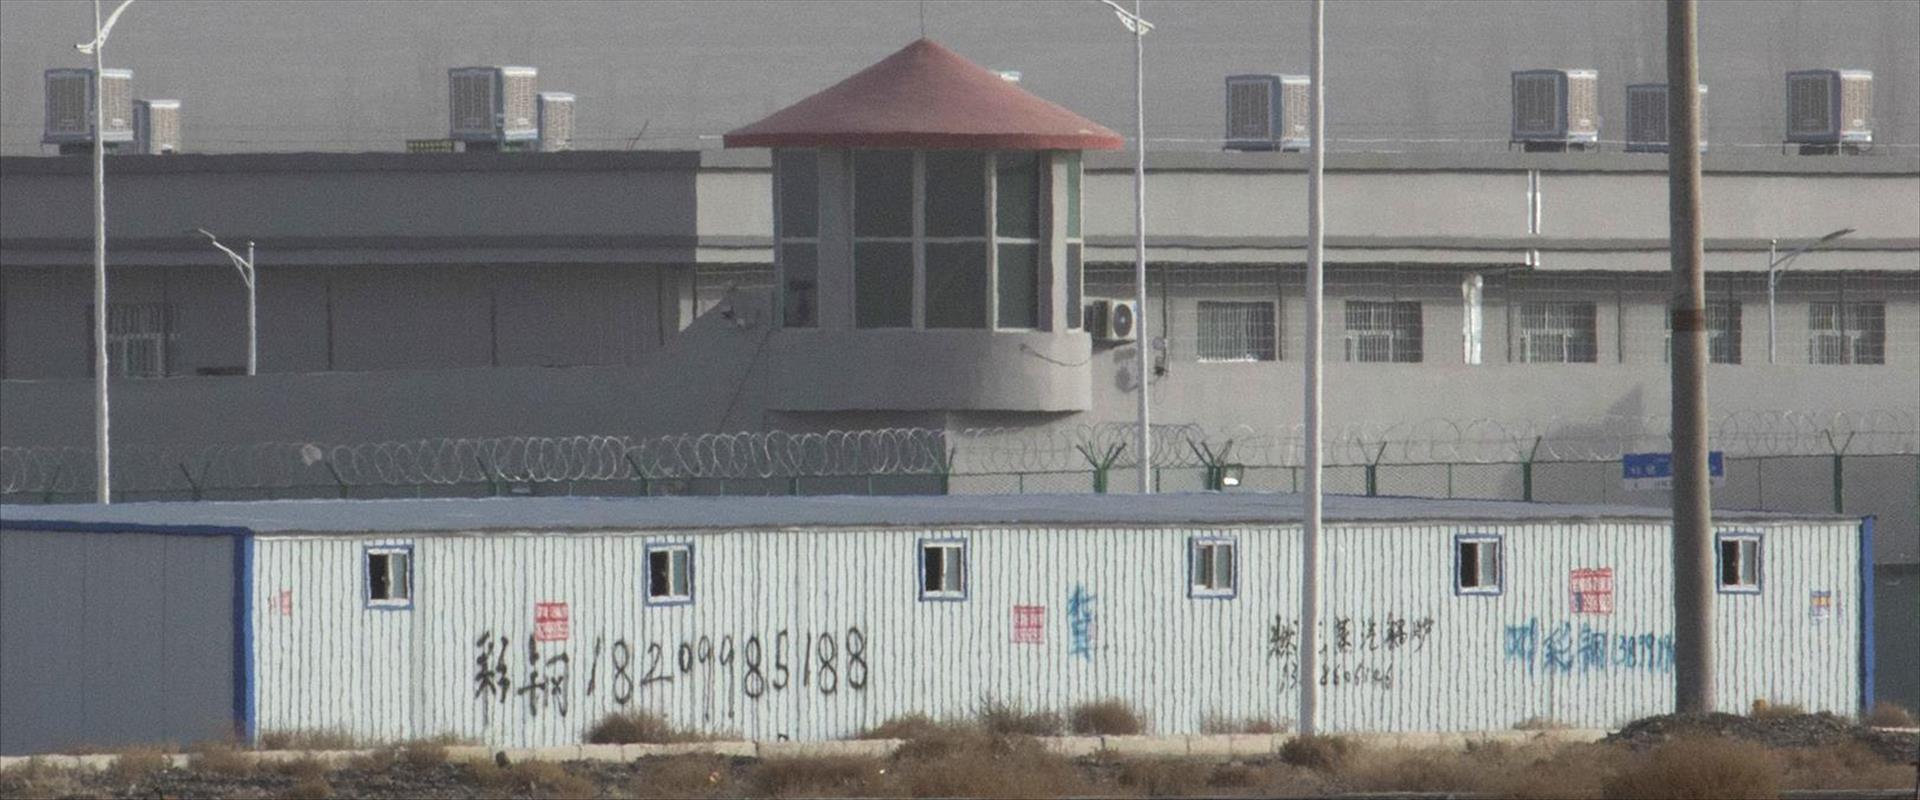 מחנה מעצר במחוז שינג'יאנג שבצפון מערב סין לצורך "ח